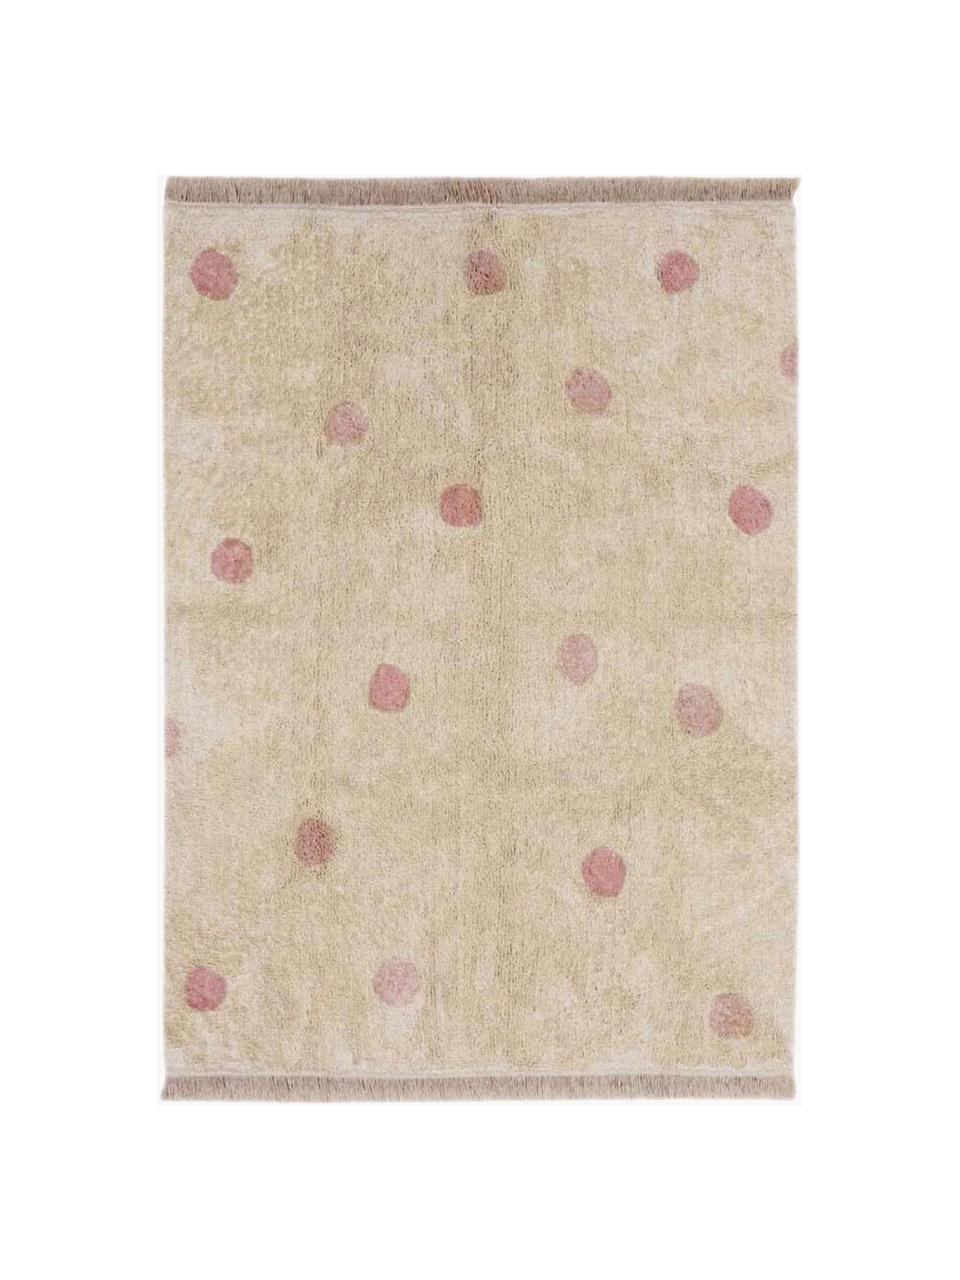 Tappeto per bambini taftato a mano Hippy Dots, Retro: 100% cotone, Beige chiaro, rosa cipria, Larg. 120 x Lung. 160 cm (taglia S)